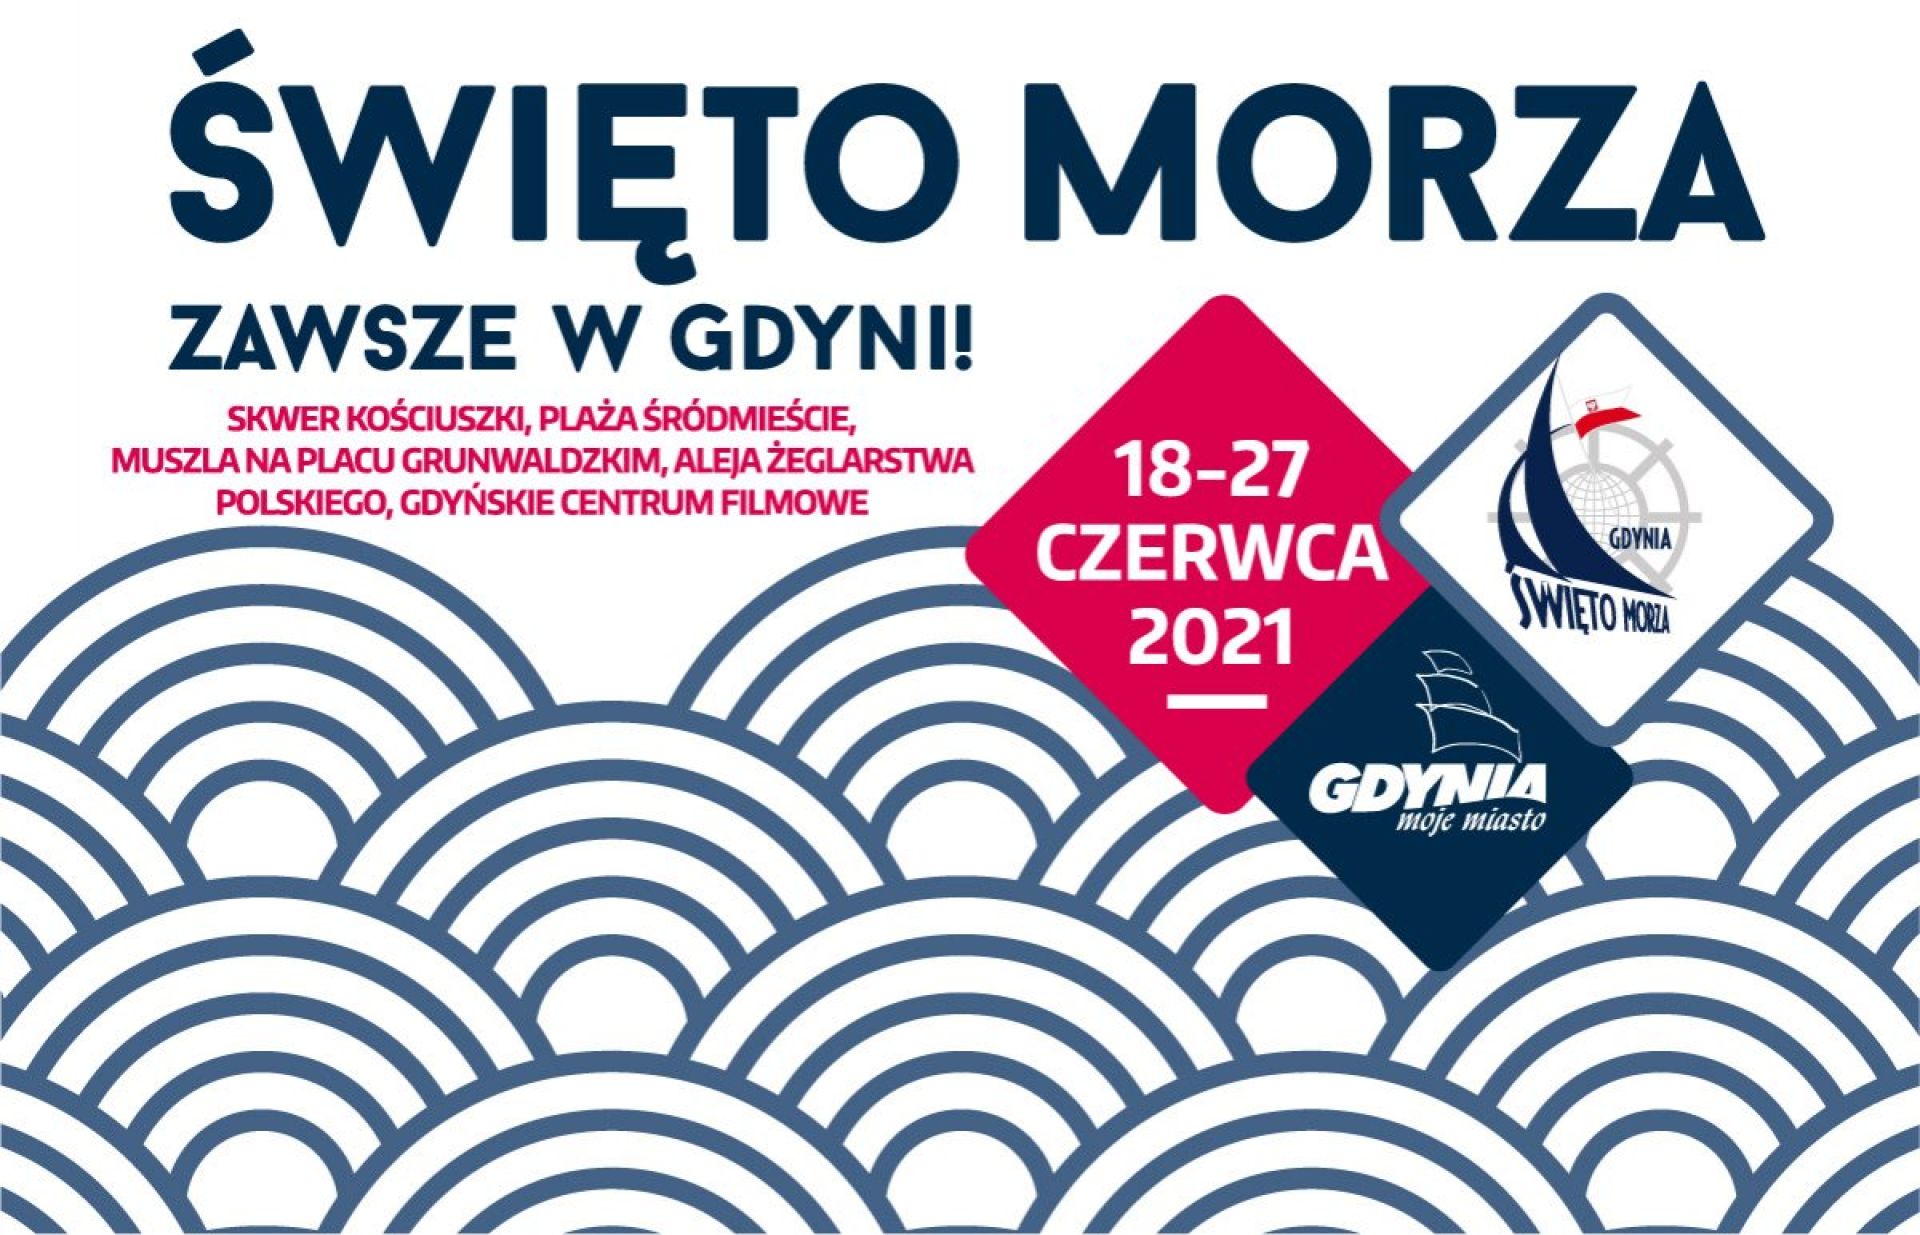 Plakat promujący Święto Morza w Gdyni 